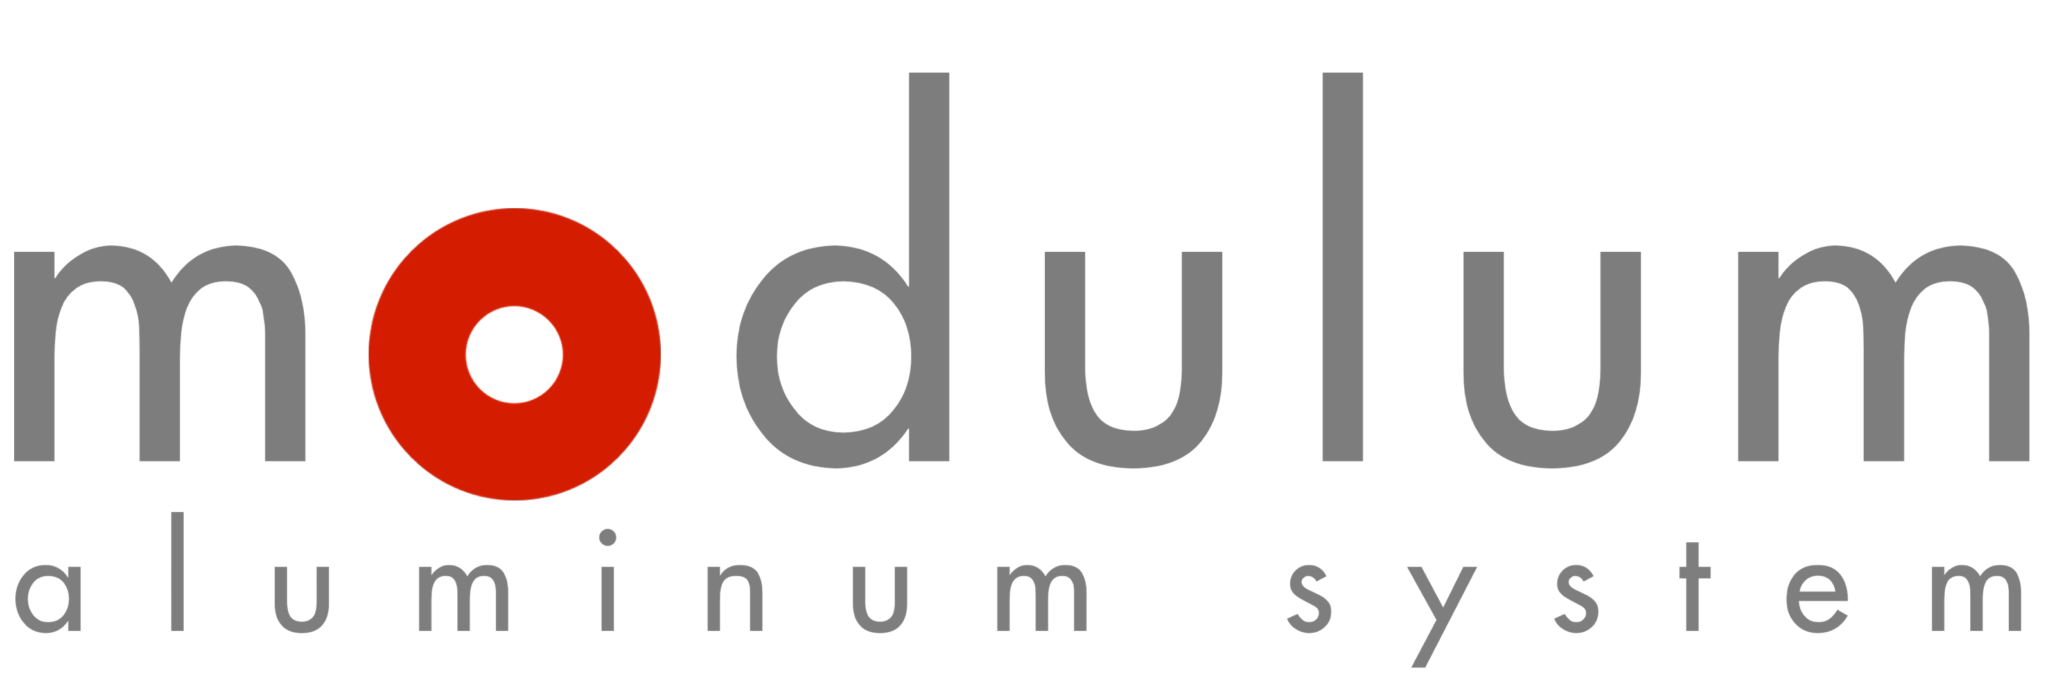 modulum